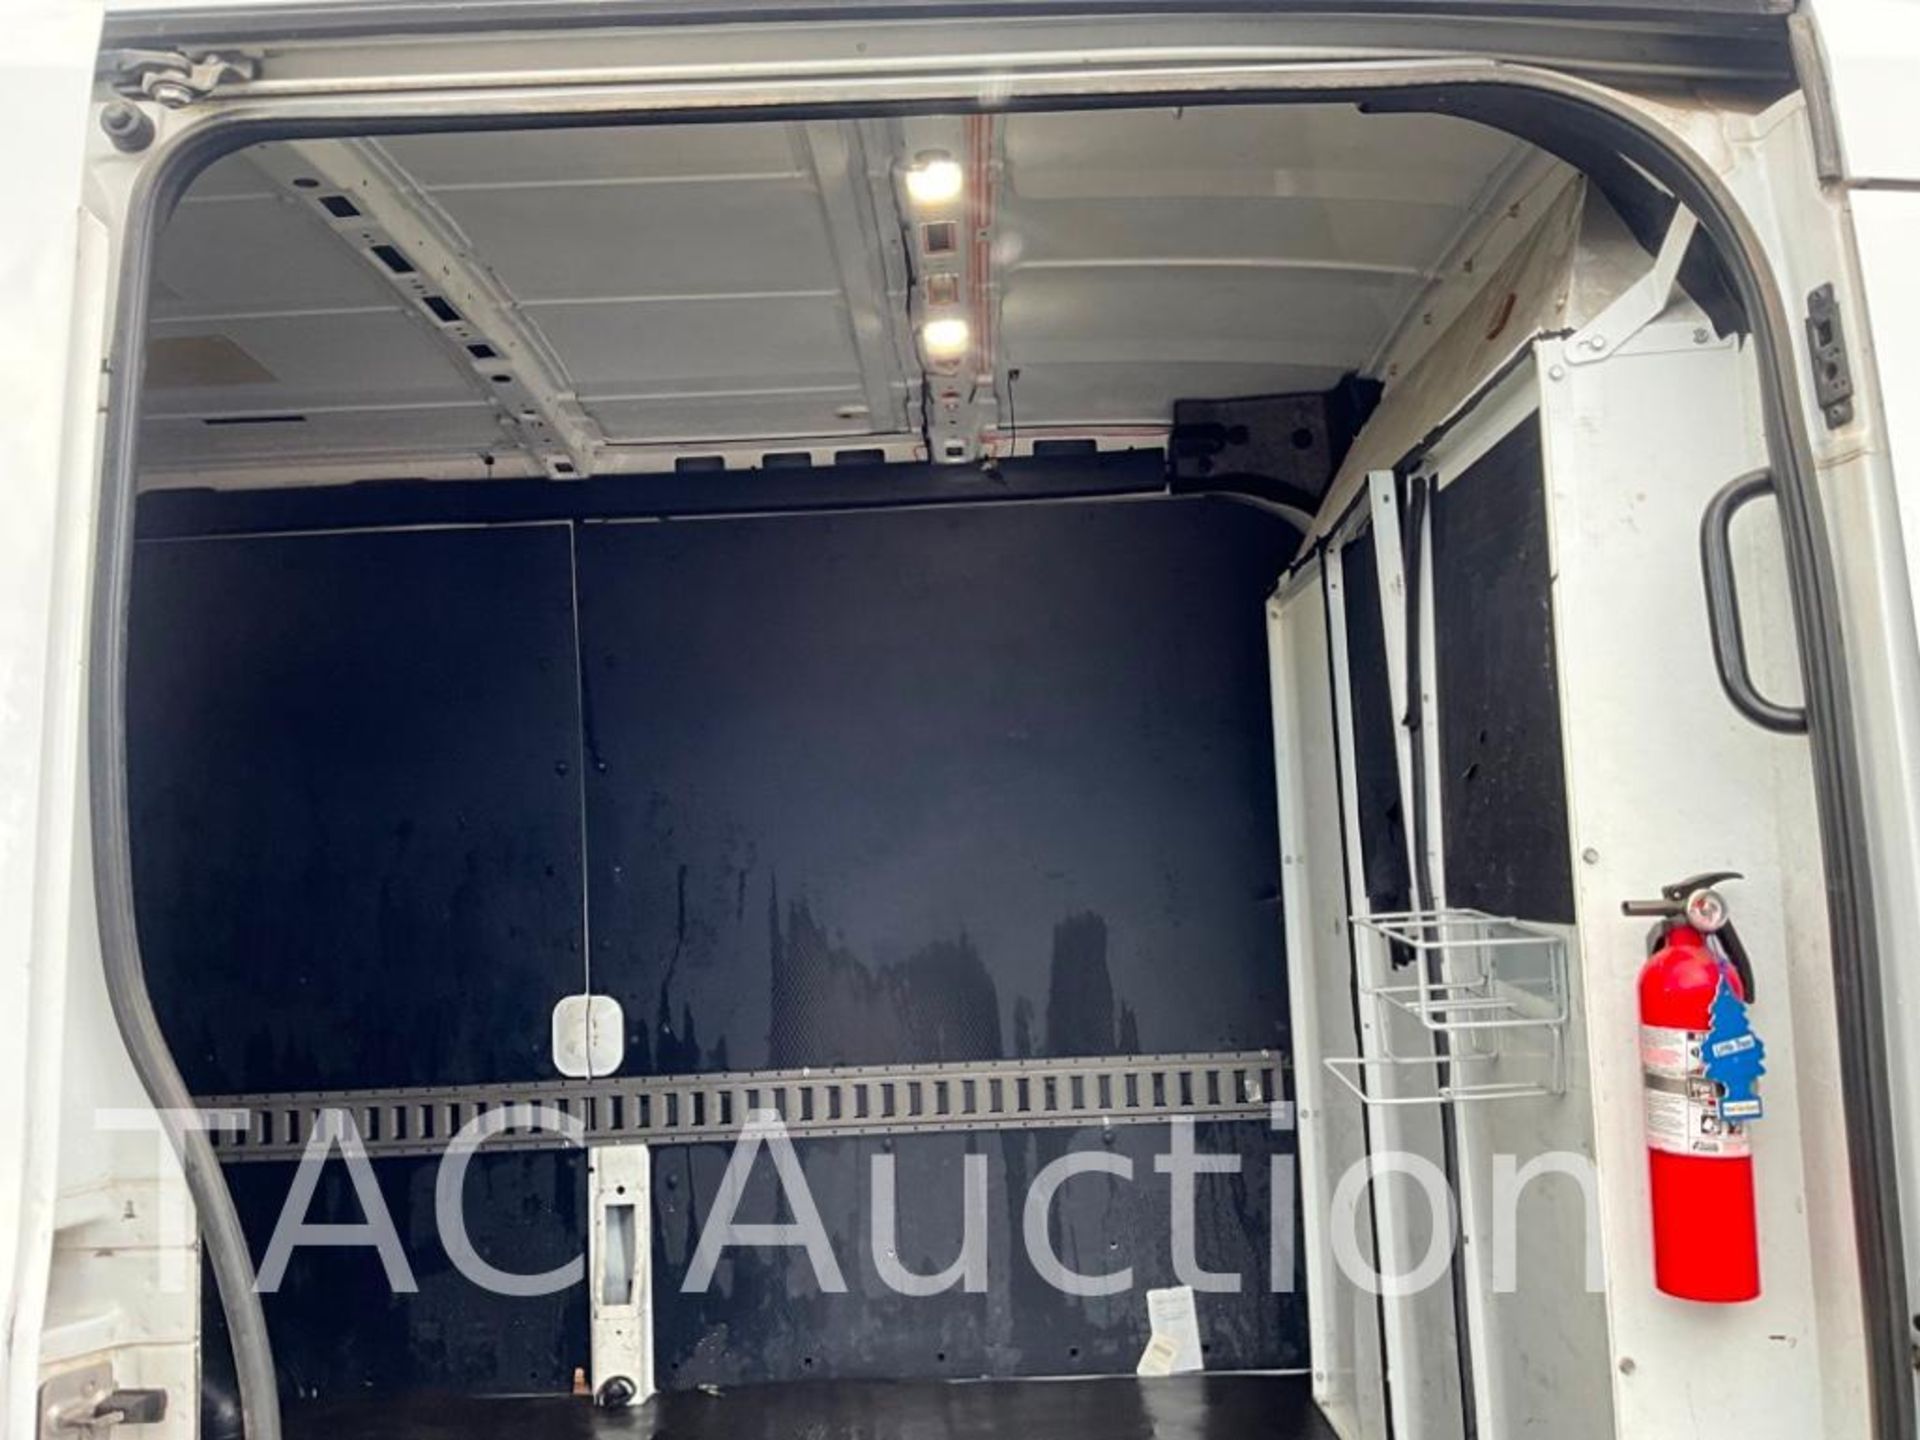 2019 Ford Transit 150 Cargo Van - Image 32 of 56